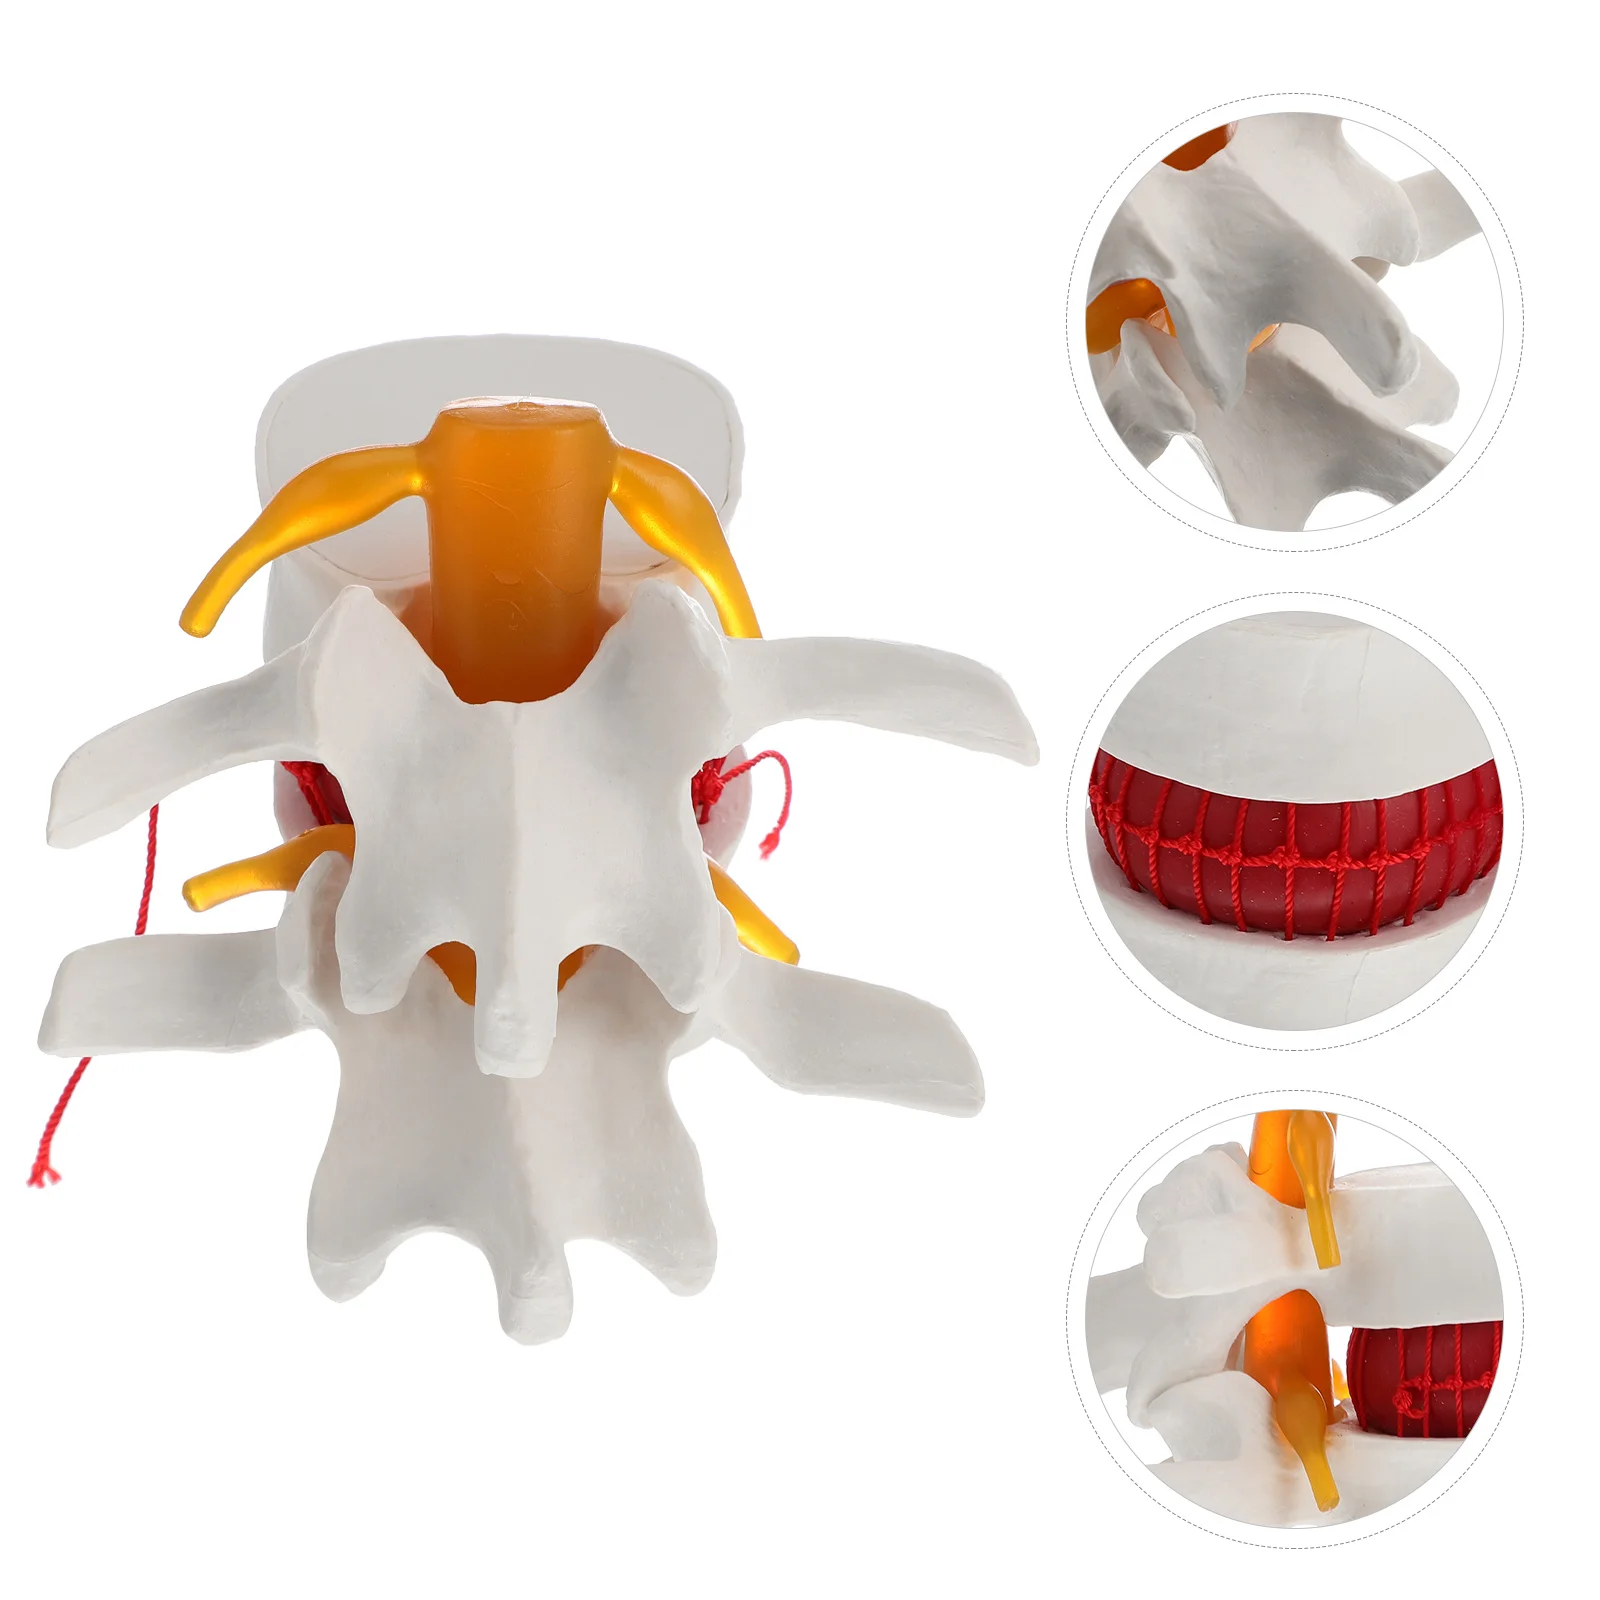 

Manikin Spine Model Enlargement Lumbar Vertebra Pathology PVC Teaching Medical Training Anatomy